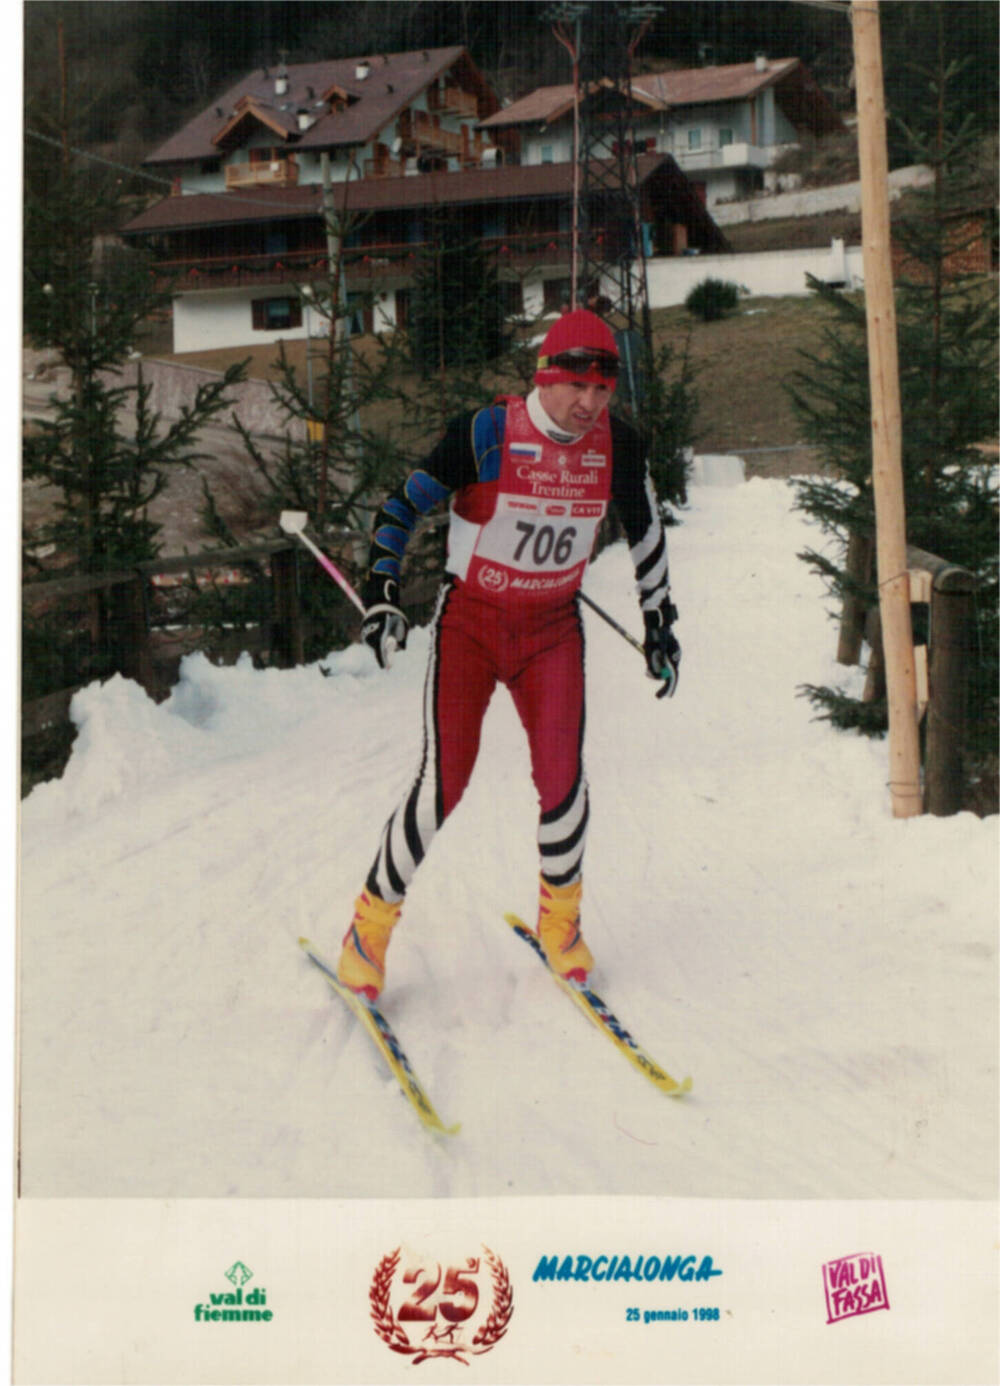 фото : Виктор Крутихин  на трассе марафона 90 км в Швейцарии 1998 г